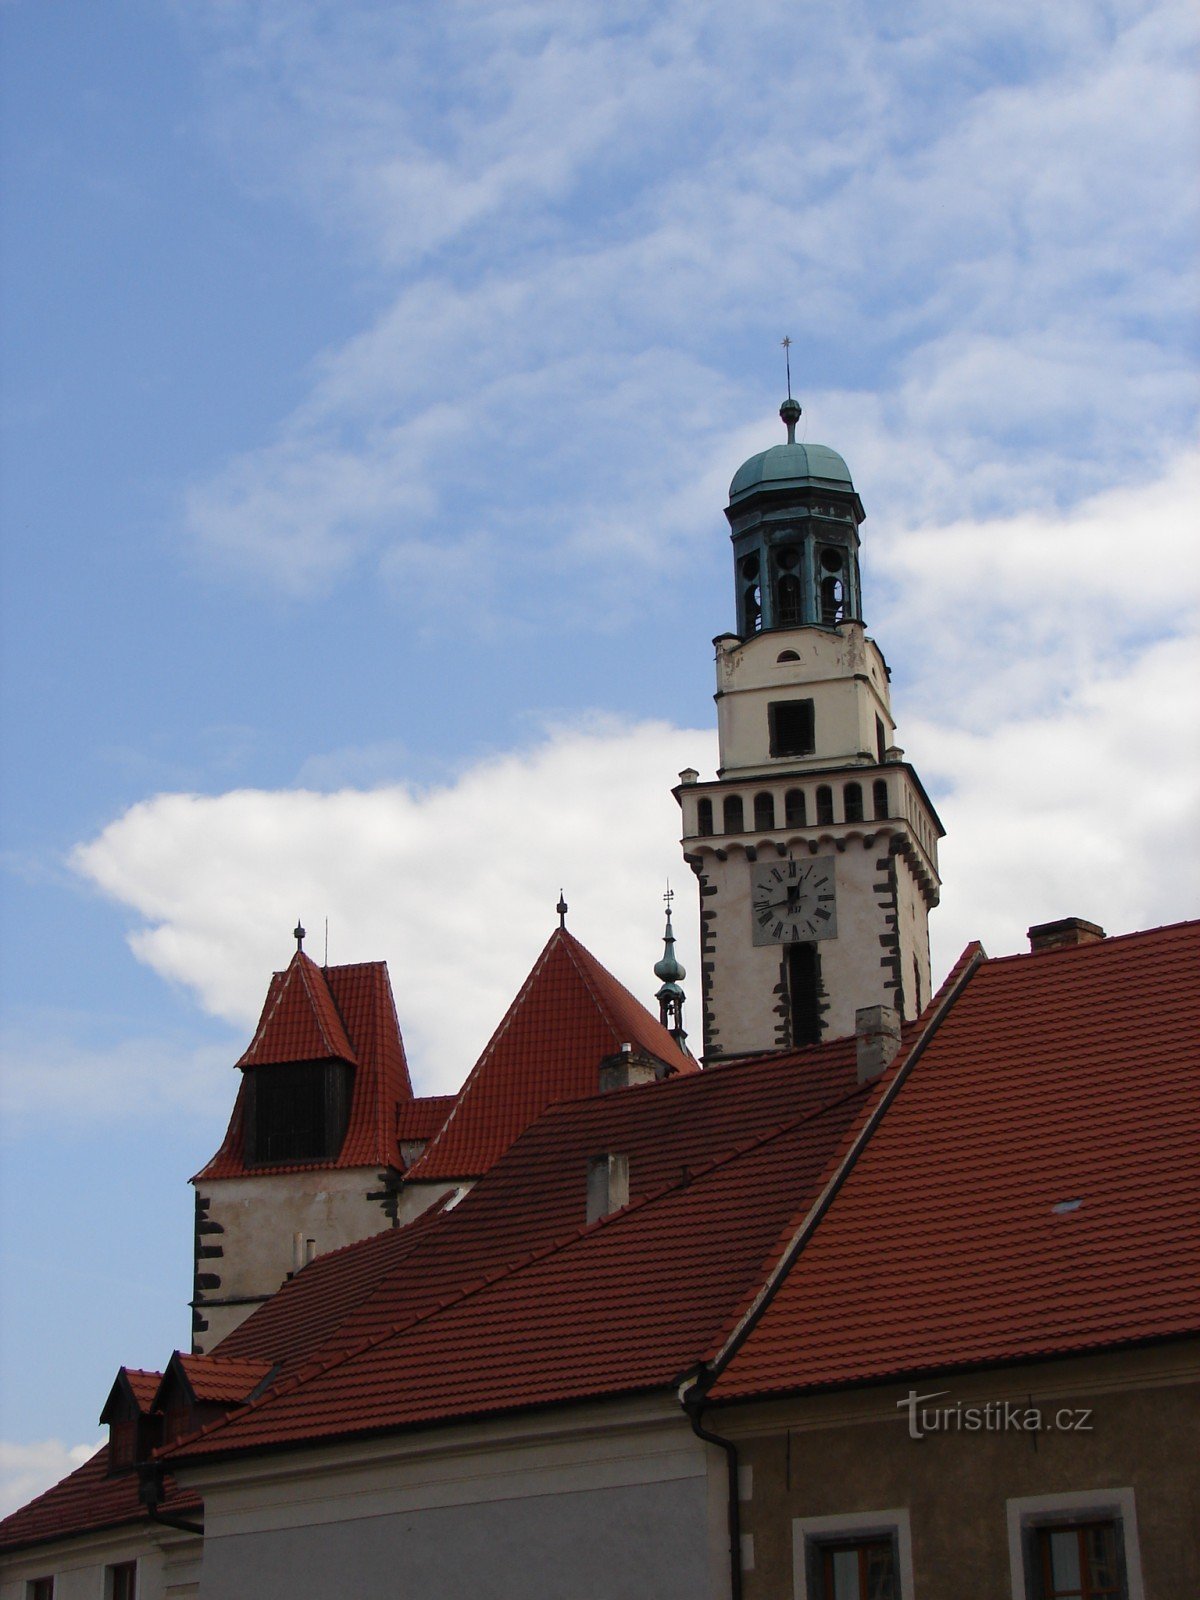 Visite a igreja de S. Jakub em Prachatice, onde o santo padroeiro dos comerciantes e peregrinos